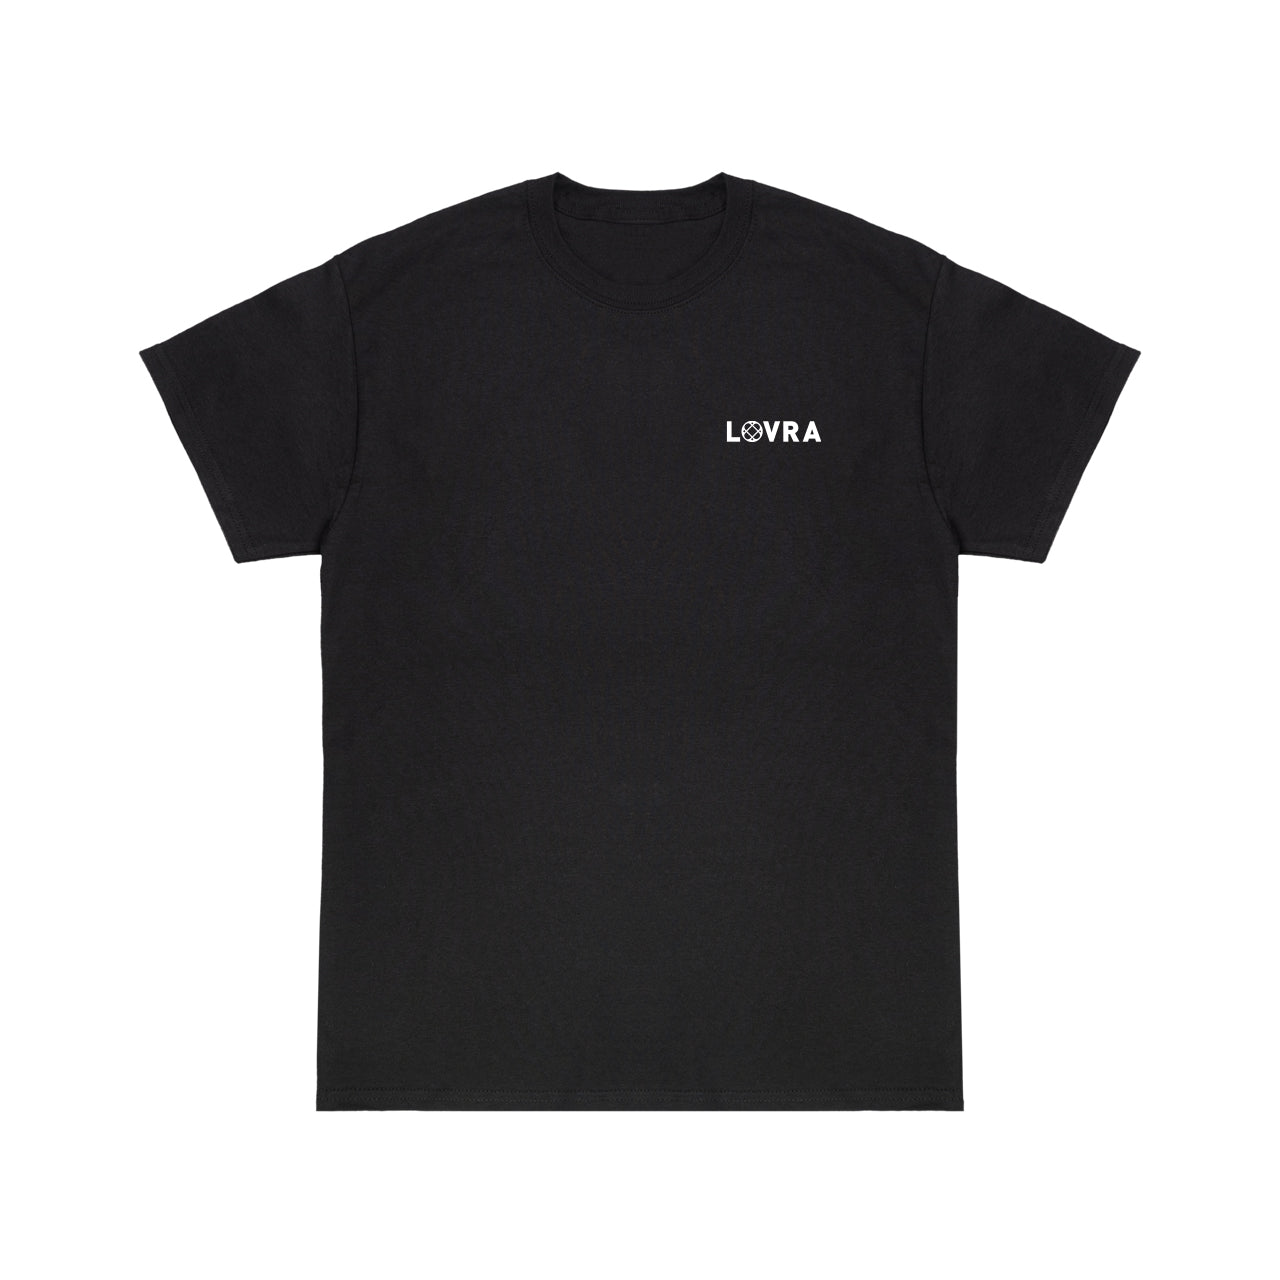 Lovra - Basic Shirt